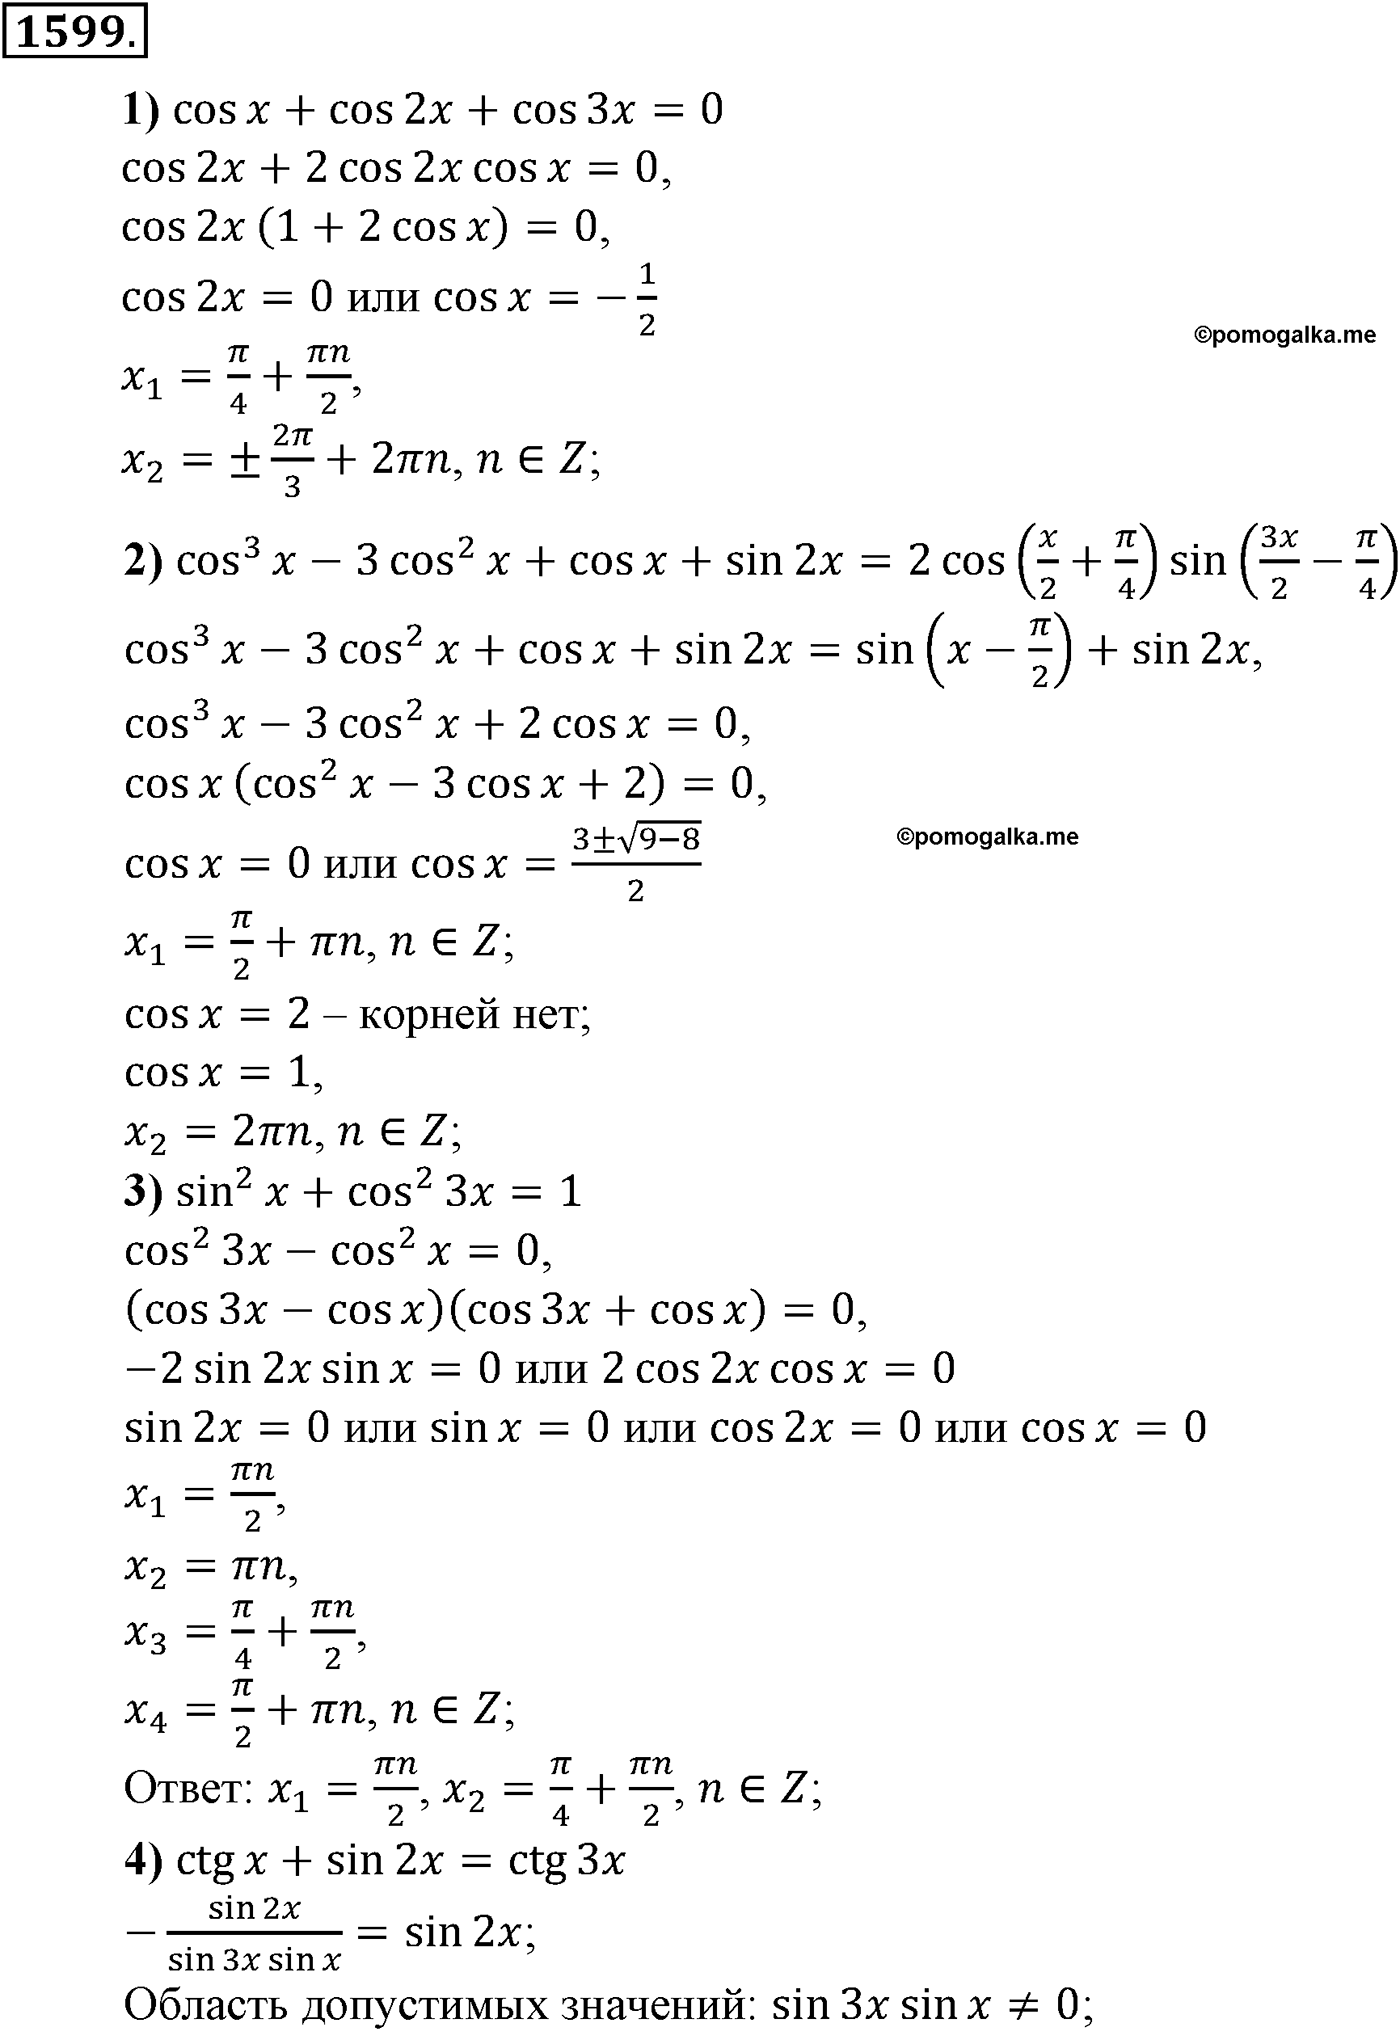 разбор задачи №1599 по алгебре за 10-11 класс из учебника Алимова, Колягина